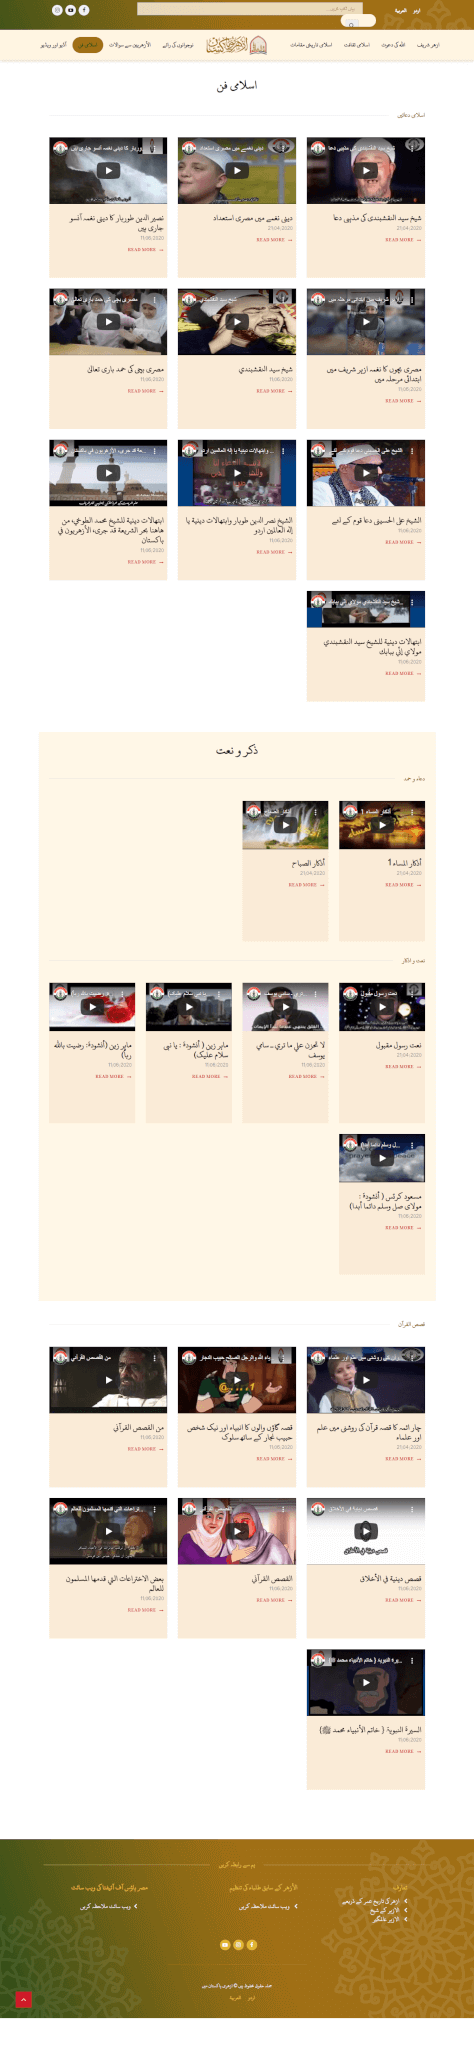 Cirque Constructions - Website Design and Development by Abdul Mateen